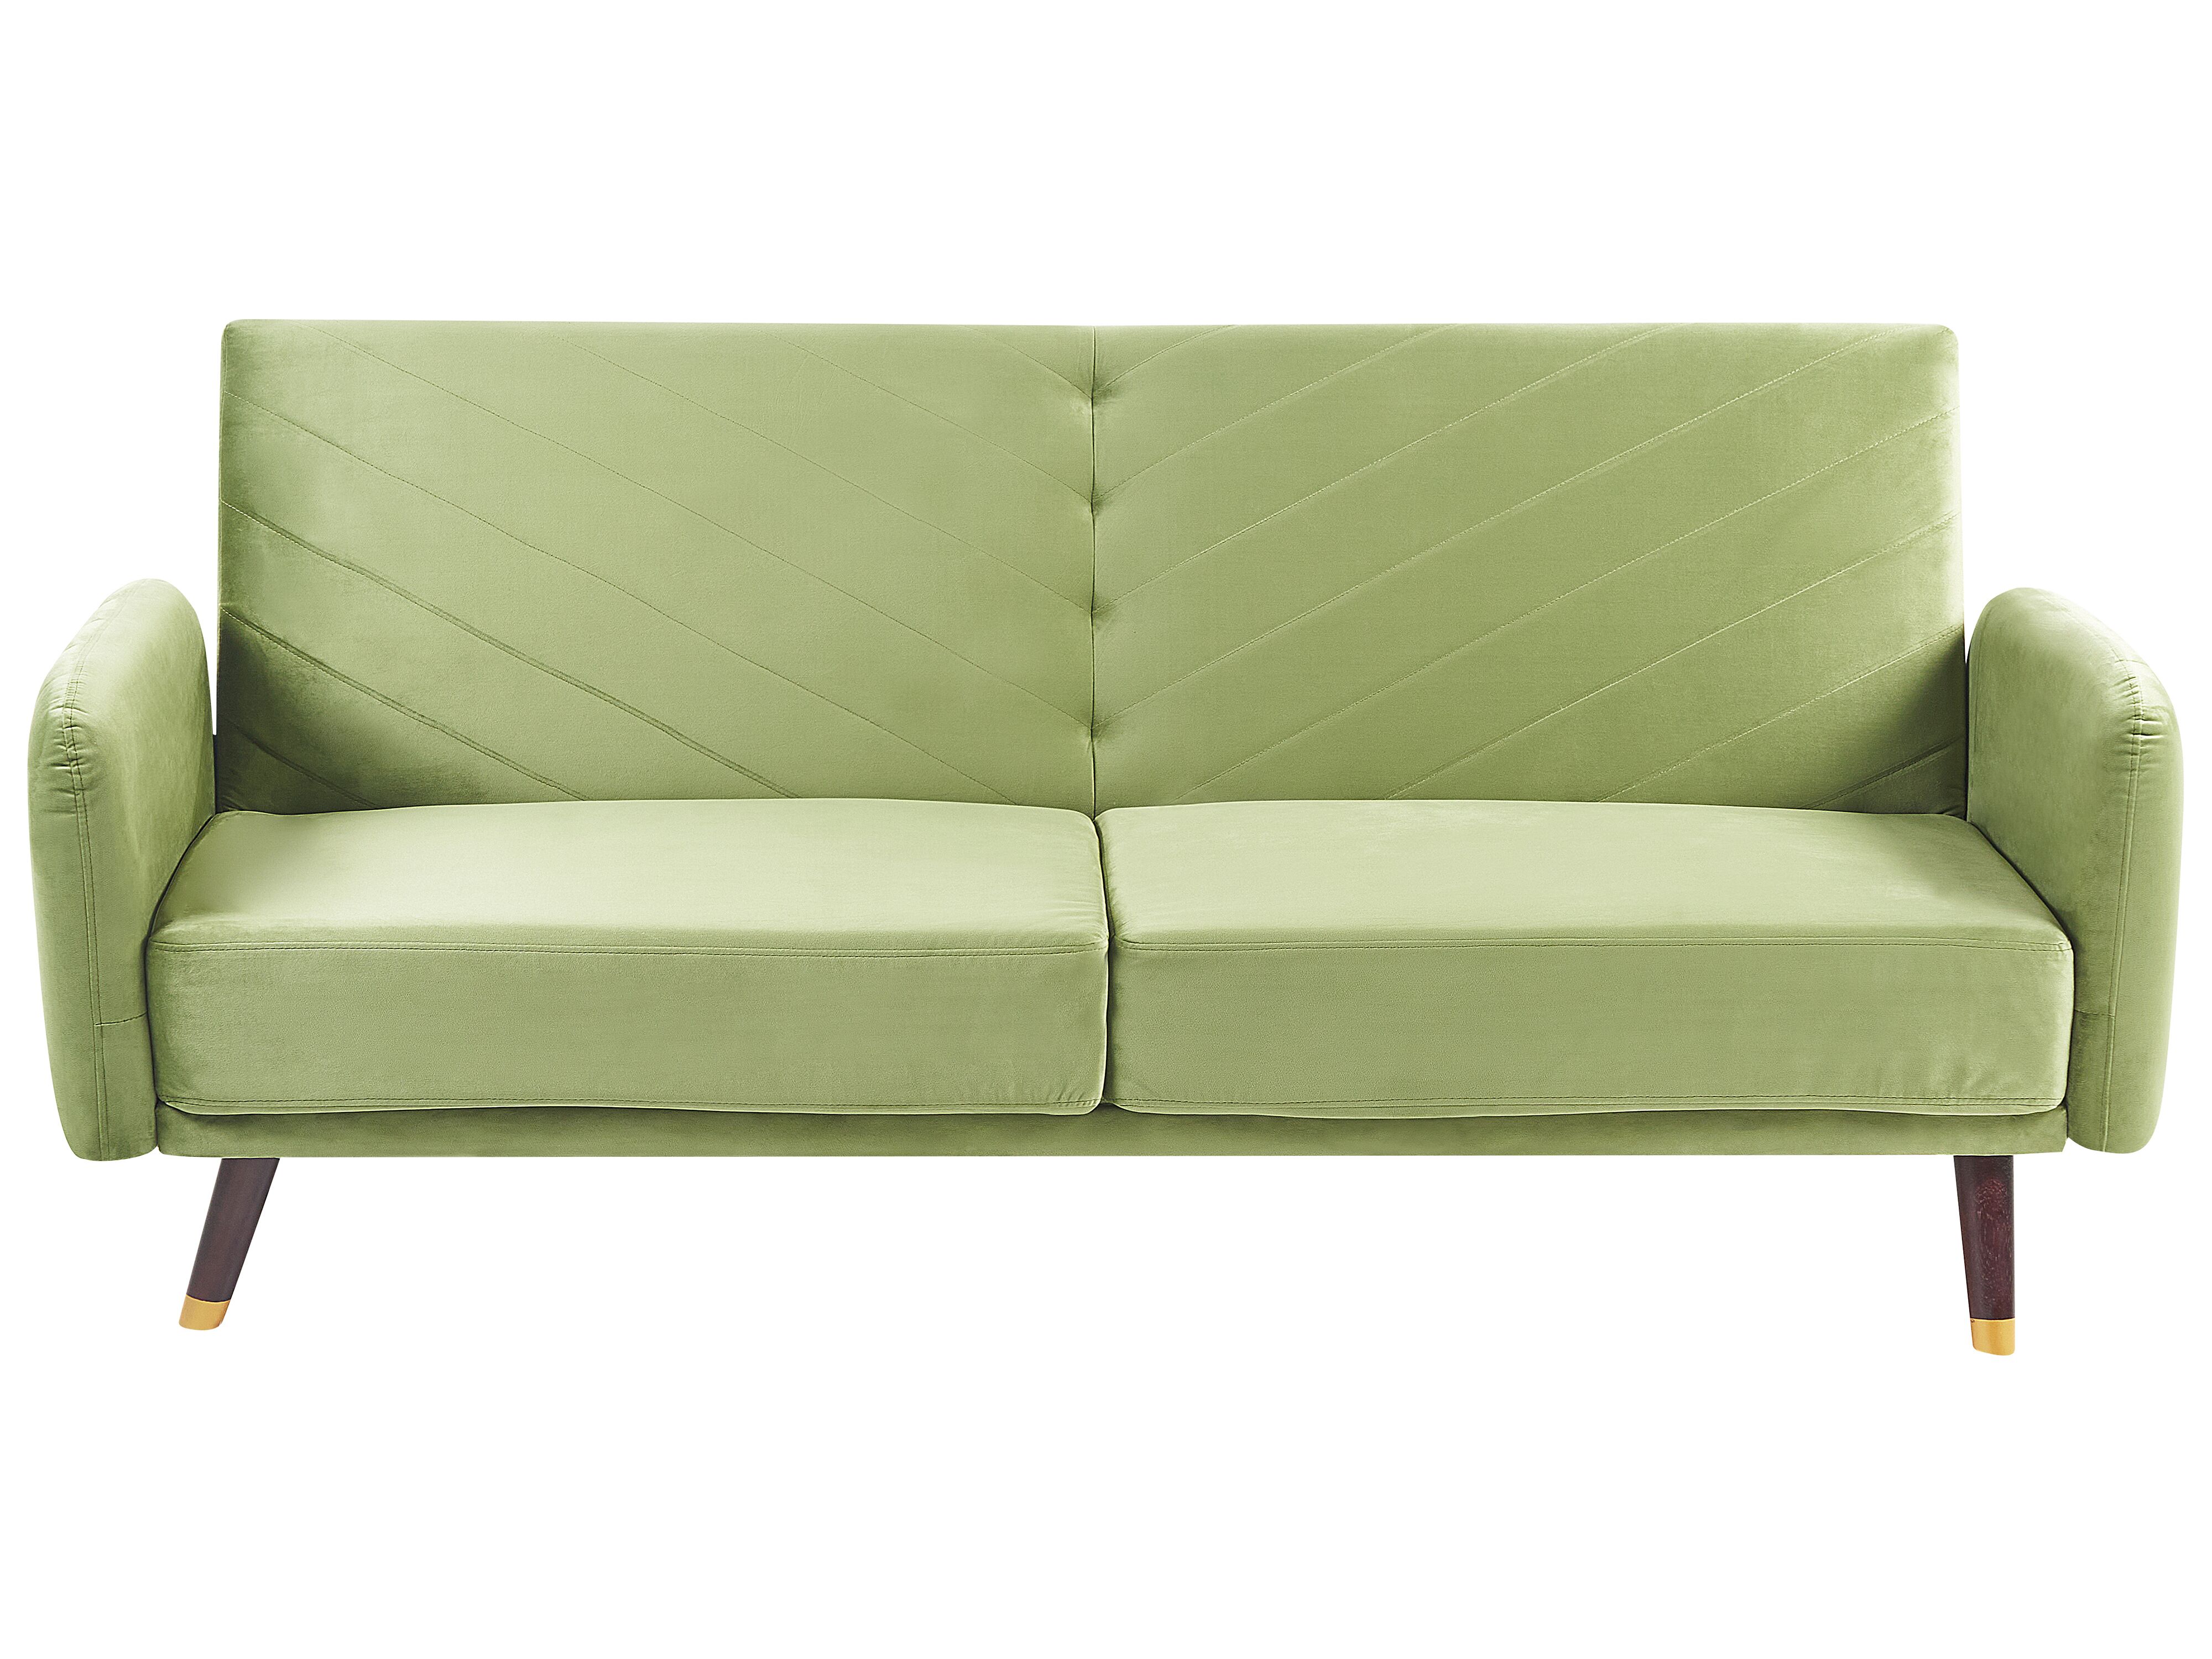 Bed　Velvet　Green　Olive　Fabric　Sofa　SENJA